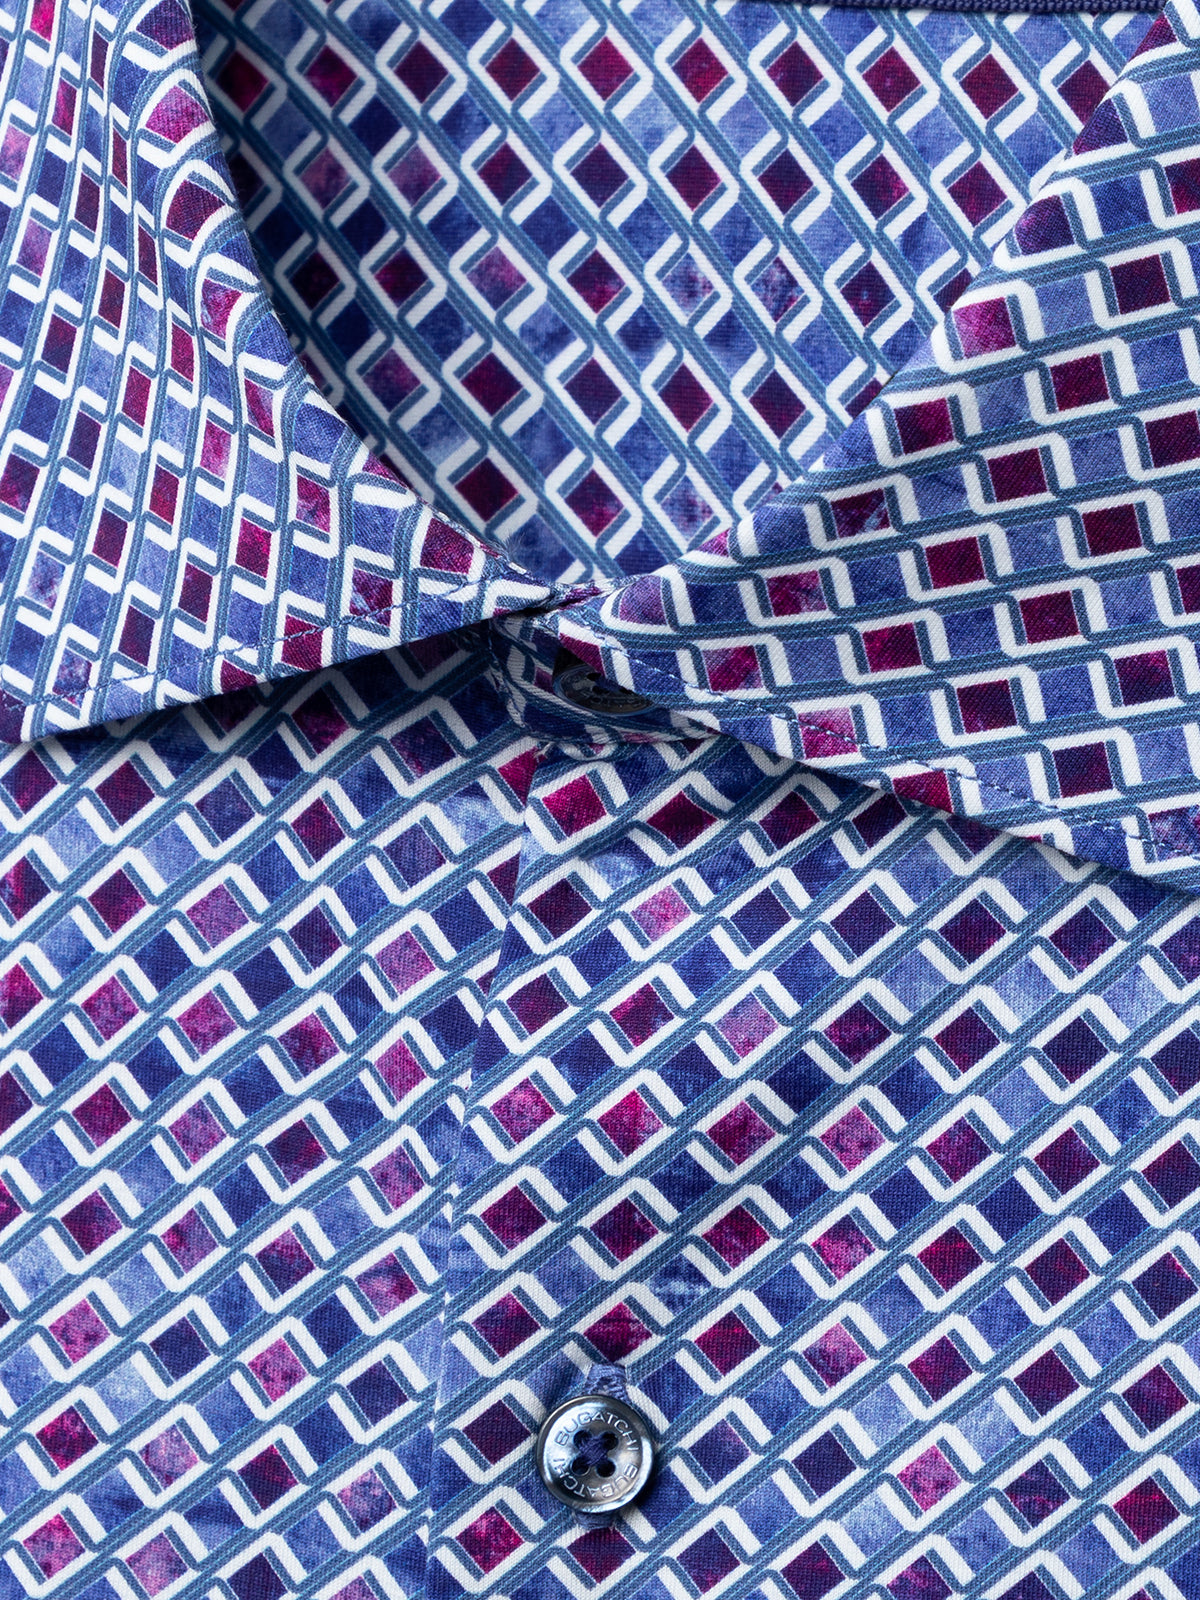 OoohCotton Tech Long Sleeve Shirt - Berry Print